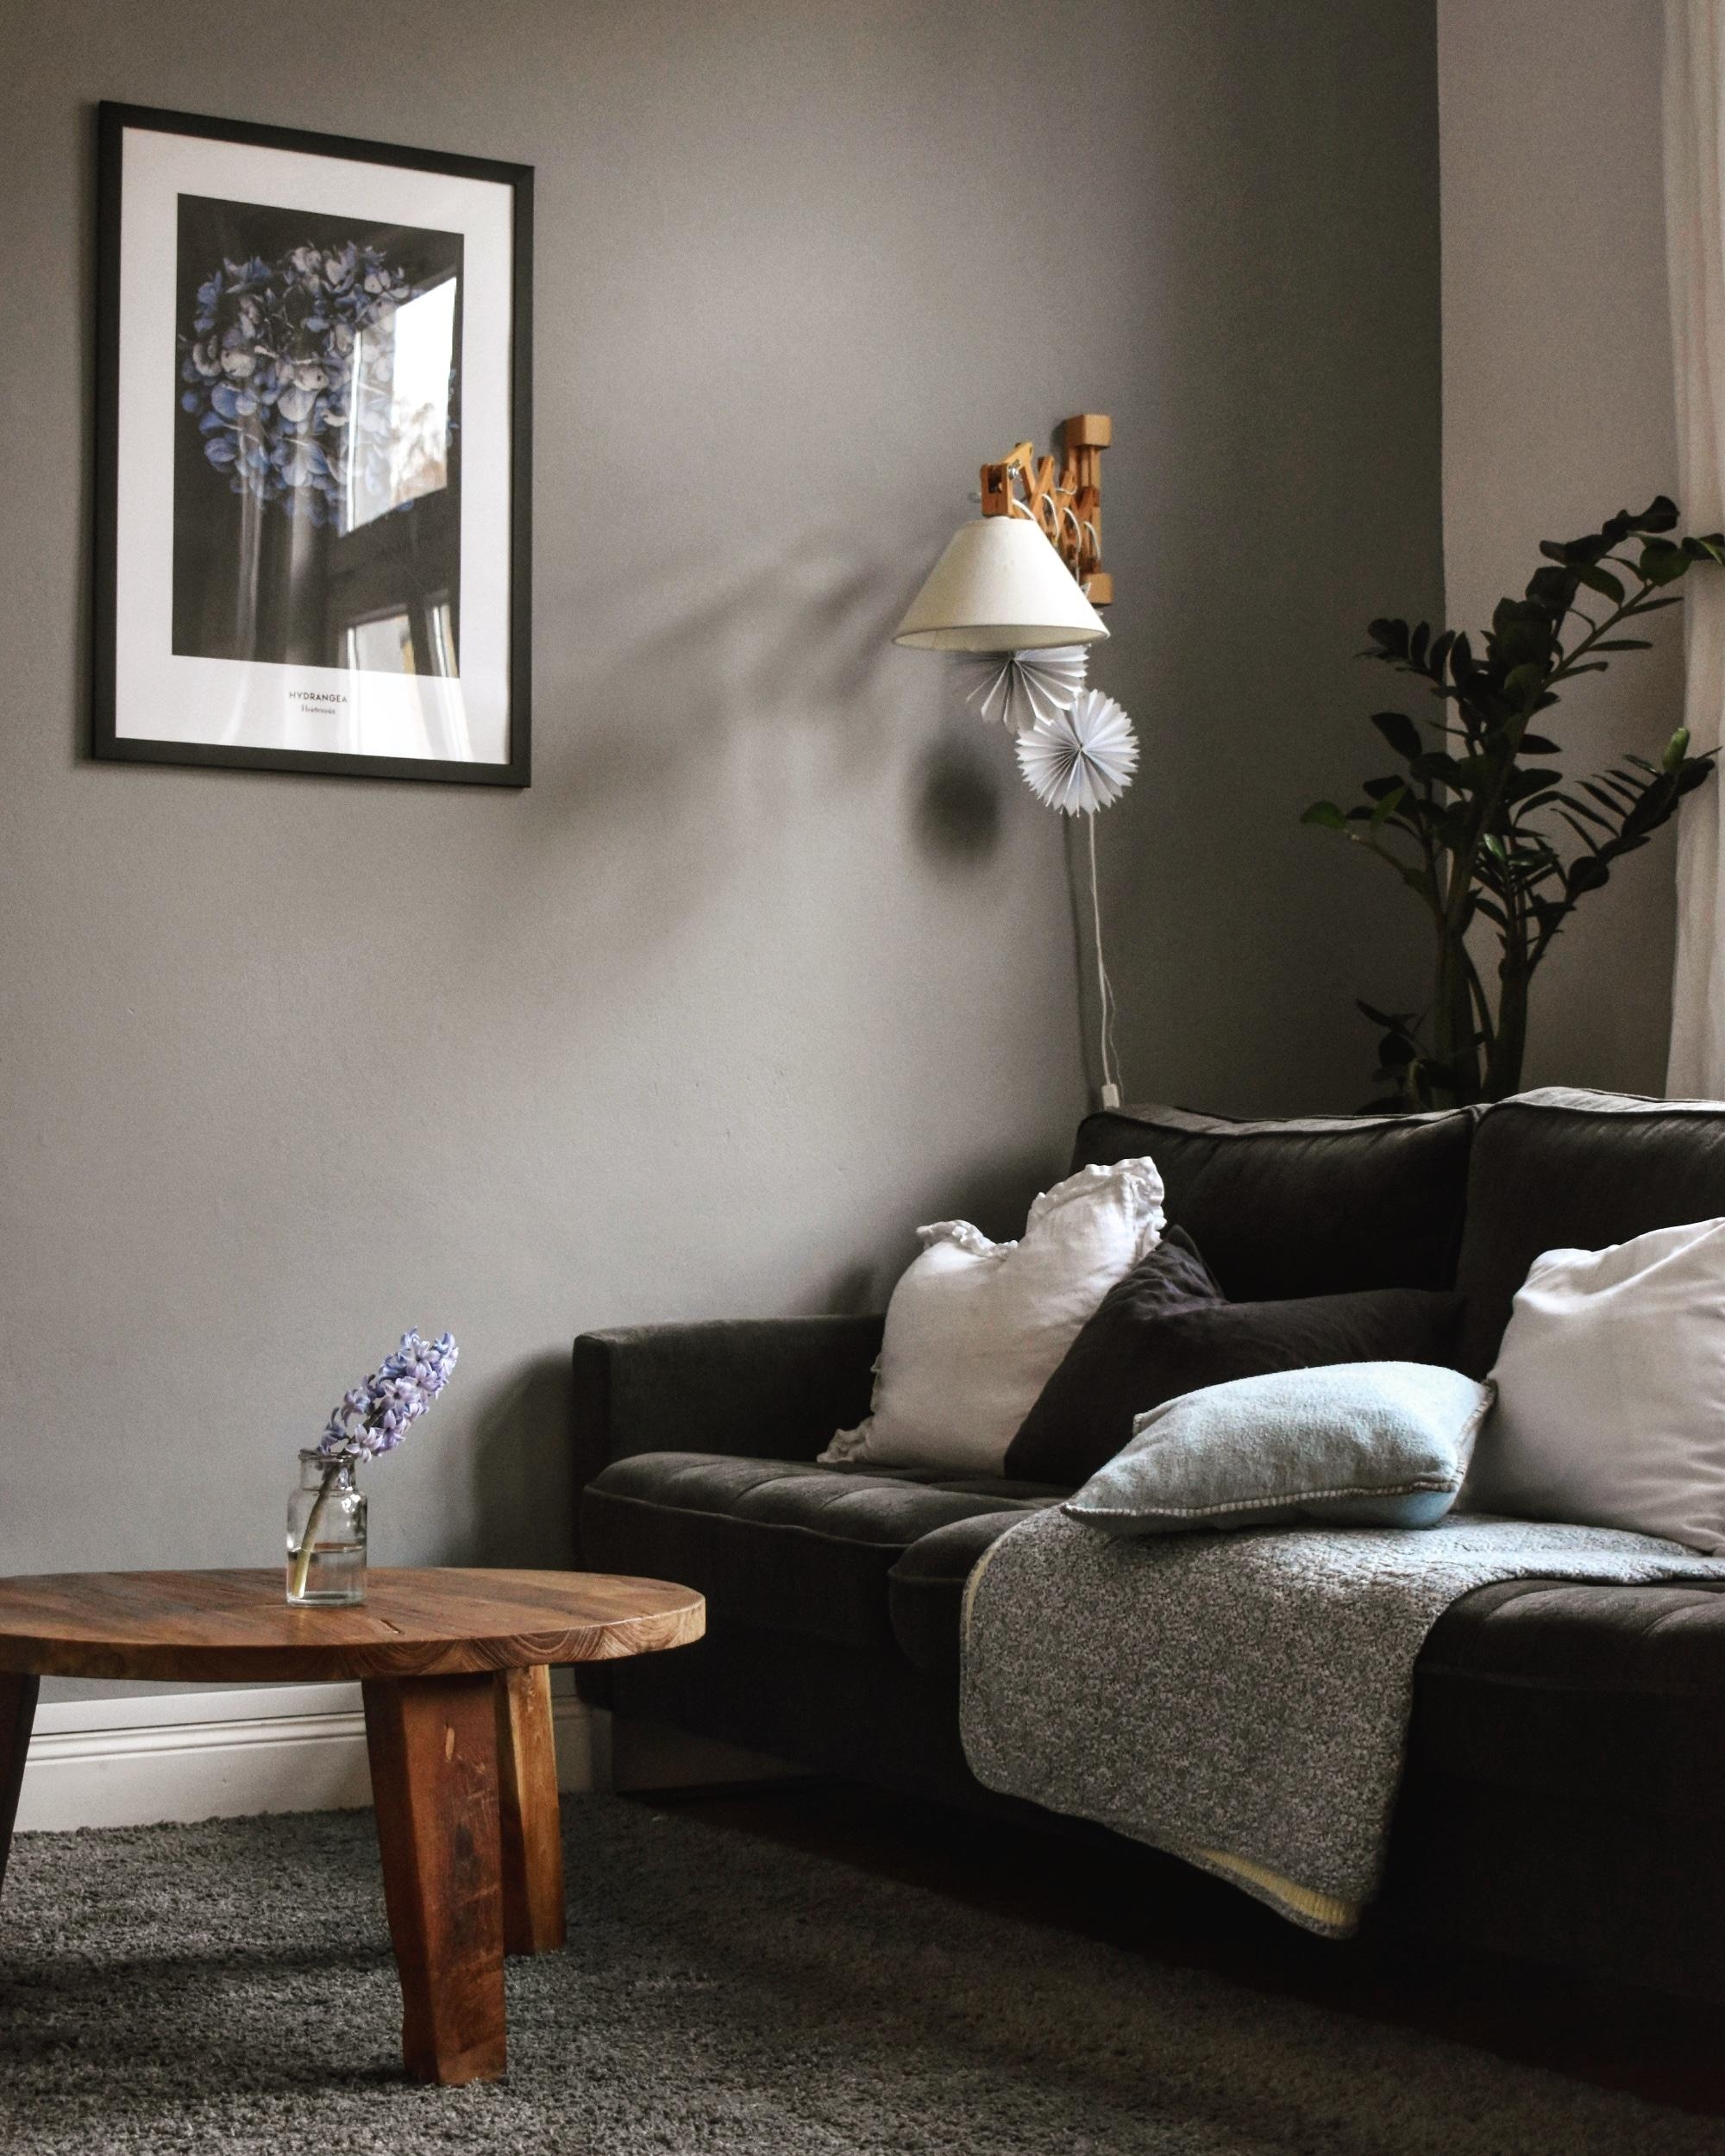 Cozy time
#wohnzimmer #cozy #couch #altbau #altbauliebe 